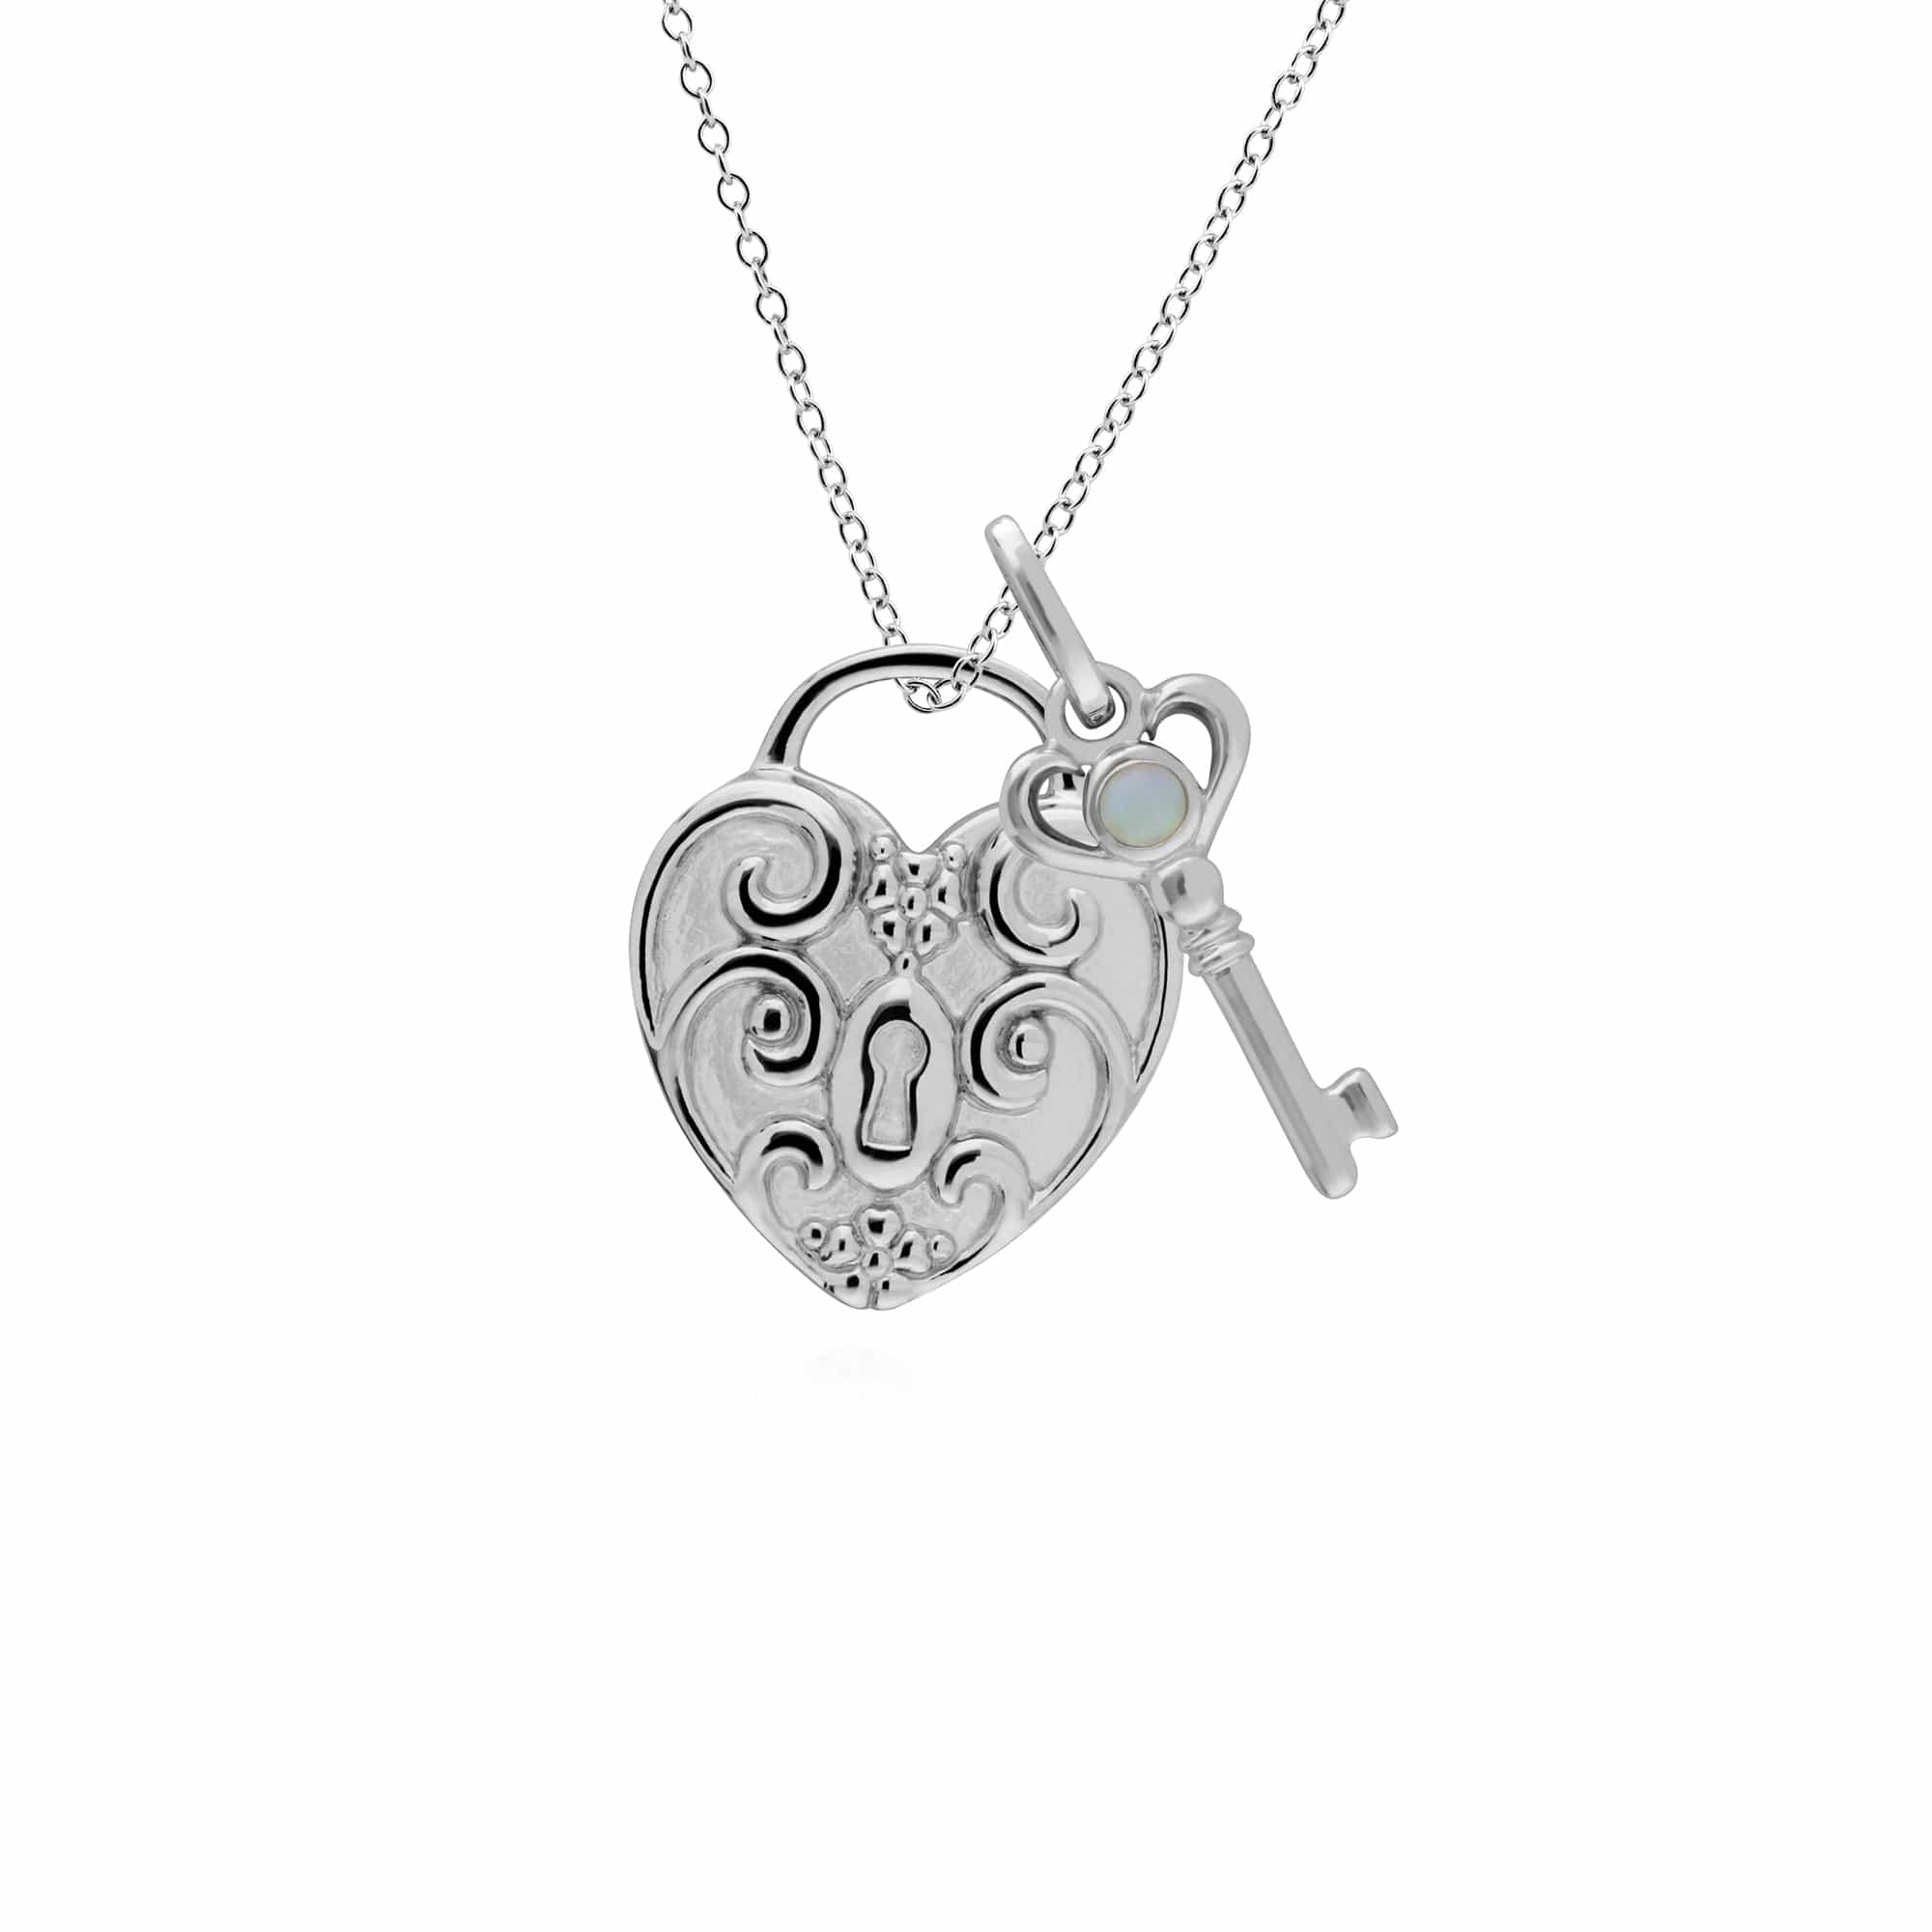 270P027503925-270P026601925 Classic Swirl Heart Lock Pendant & Opal Key Charm in 925 Sterling Silver 1